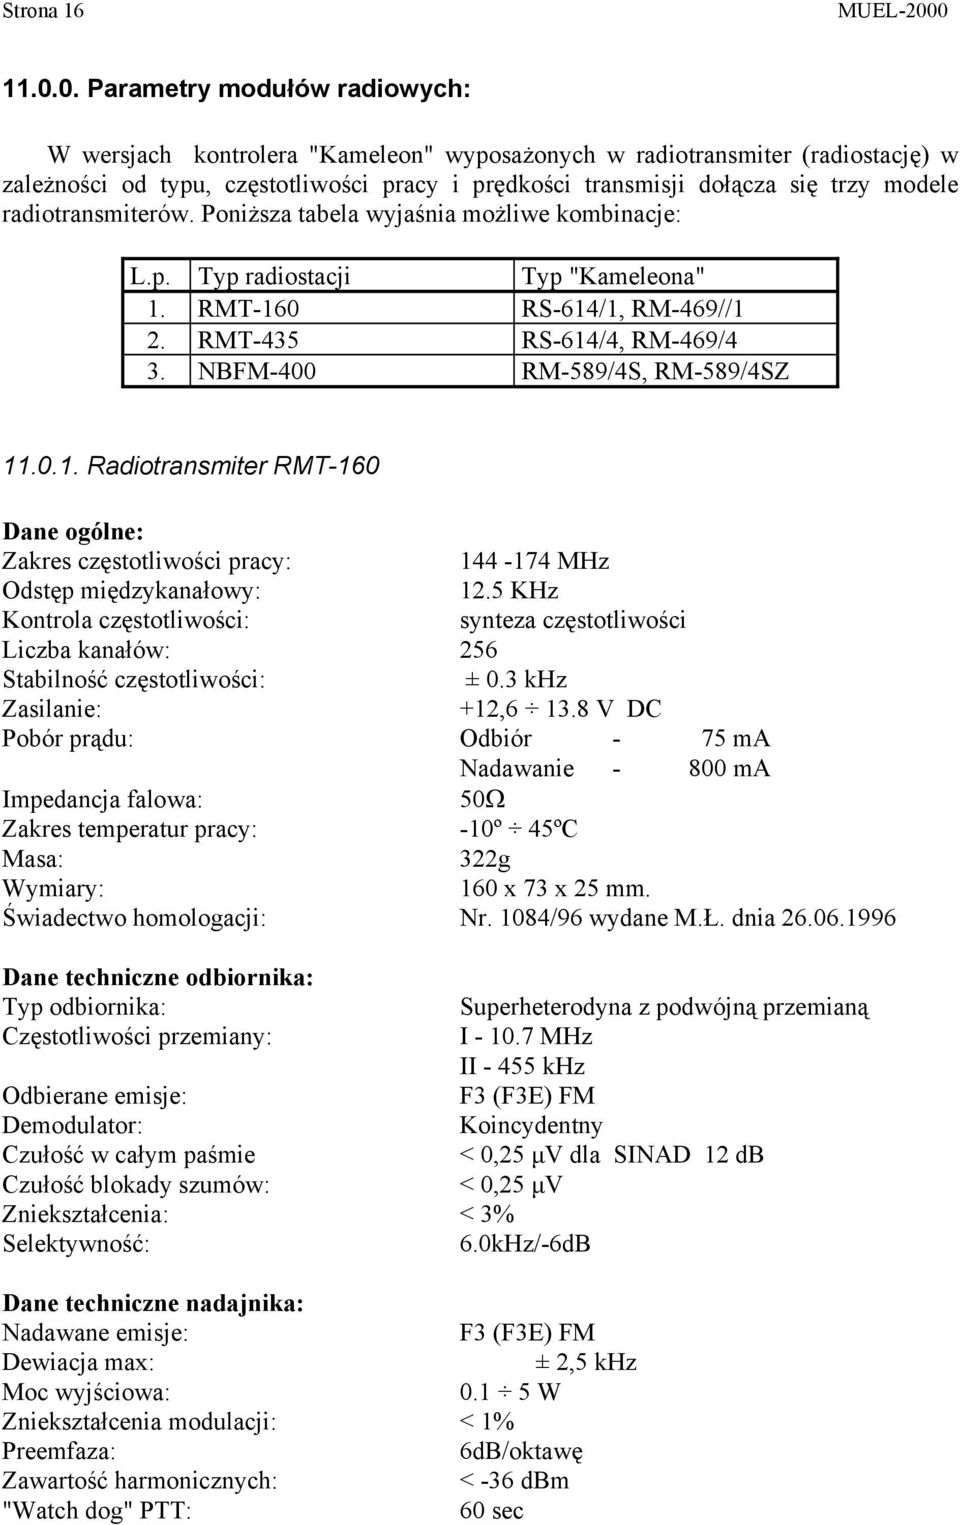 modele radiotransmiterów. Poniższa tabela wyjaśnia możliwe kombinacje: L.p. Typ radiostacji Typ "Kameleona" 1. RMT-160 RS-614/1, RM-469//1 2. RMT-435 RS-614/4, RM-469/4 3.